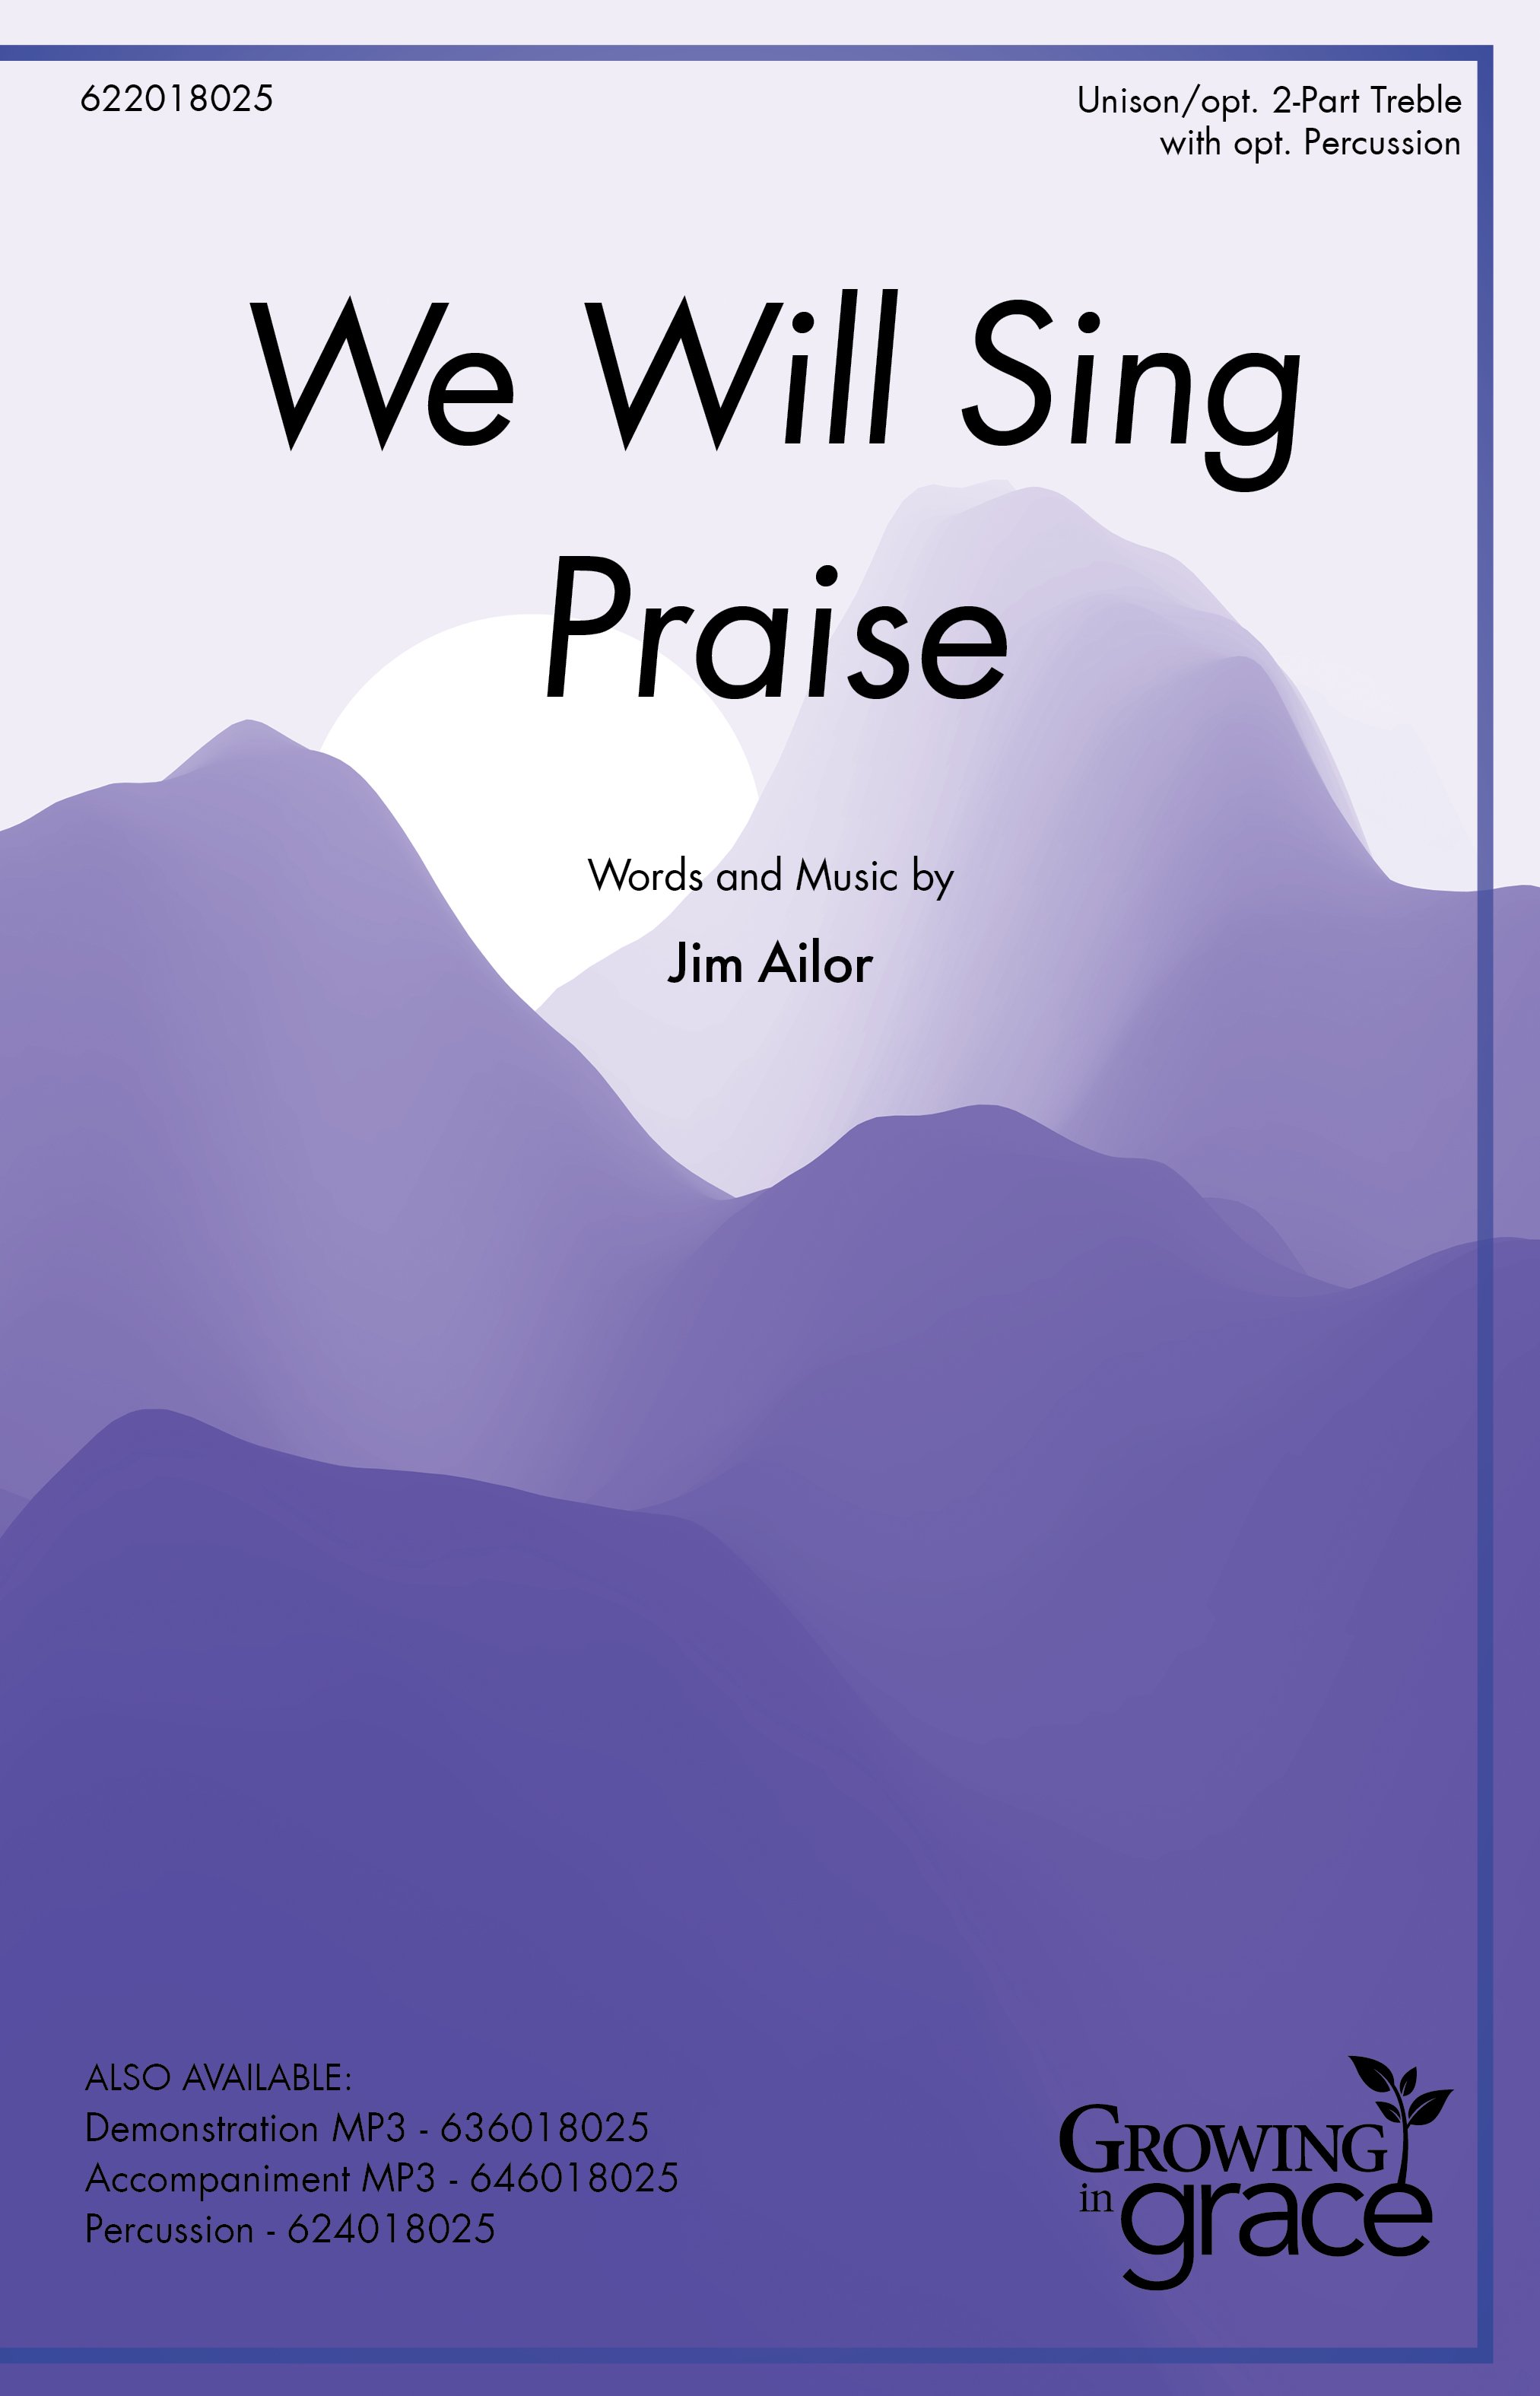 We Will Sing Praise church choir sheet music cover